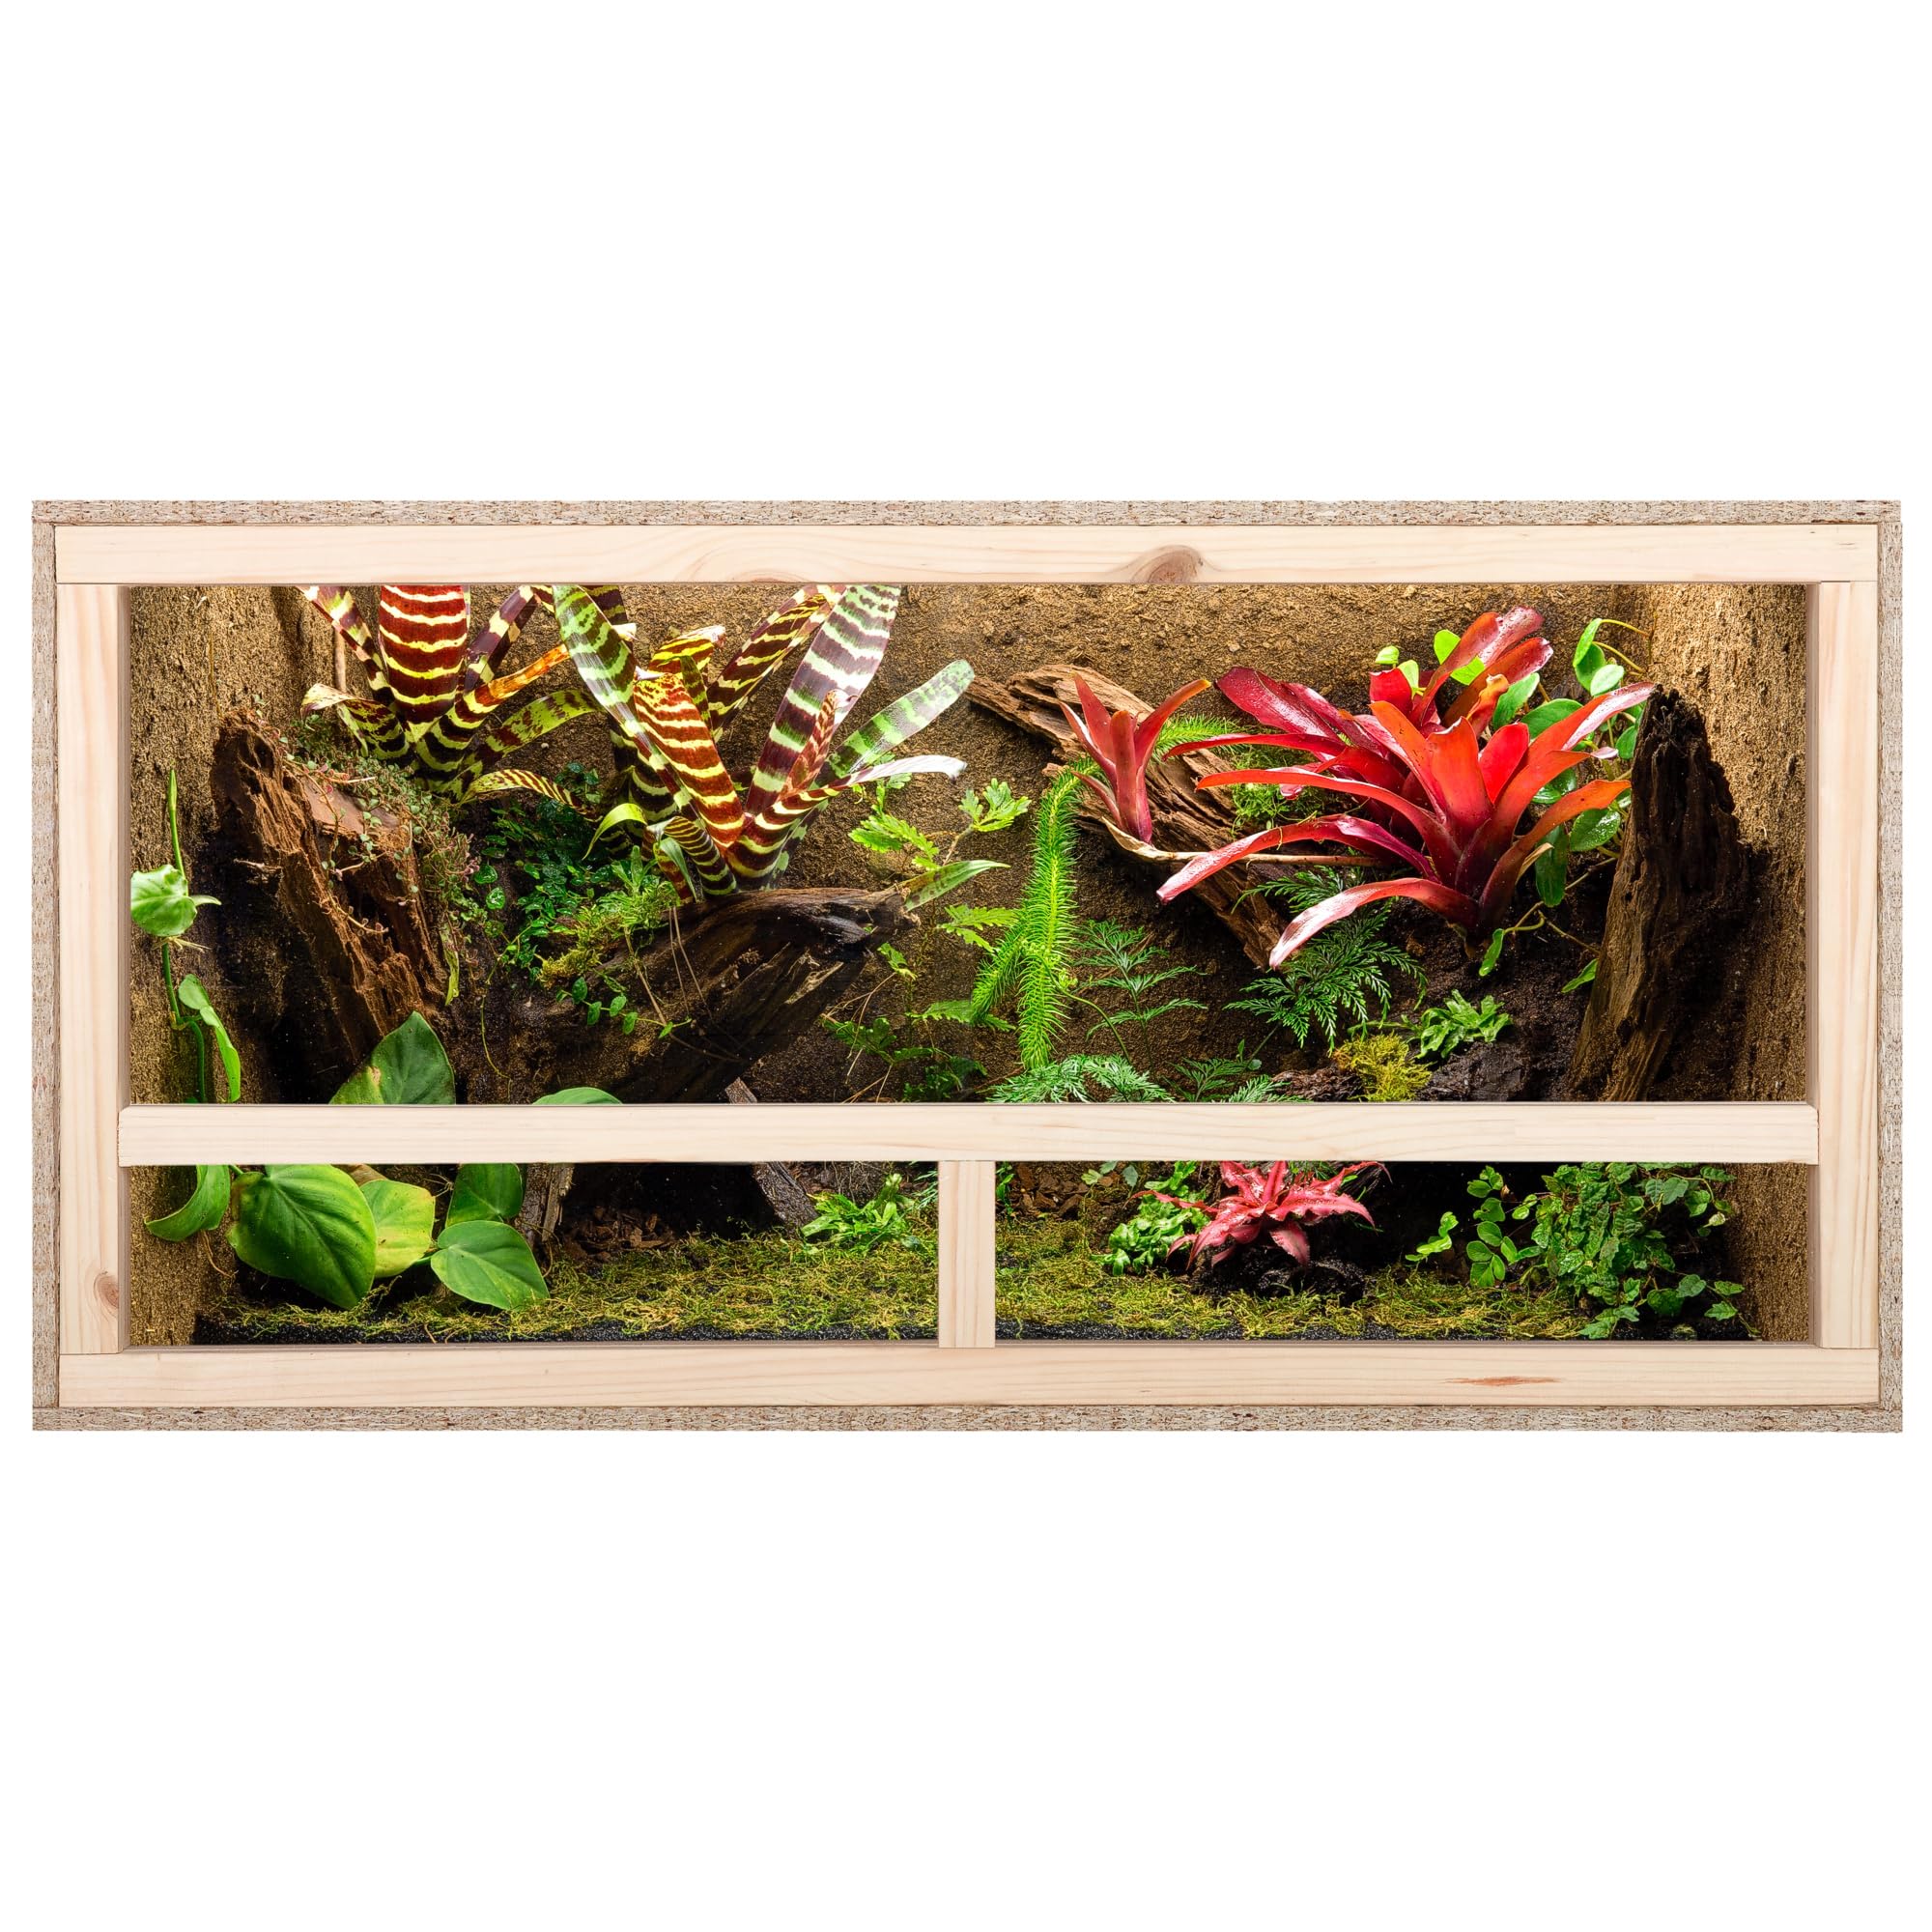 ECOZONE Holz Terrarium mit Seitenbelüftung 100x60x50 cm - Holzterrarium aus OSB Platten - Terrarien für exotische Tiere wie Schlangen, Reptilien & Amphibien